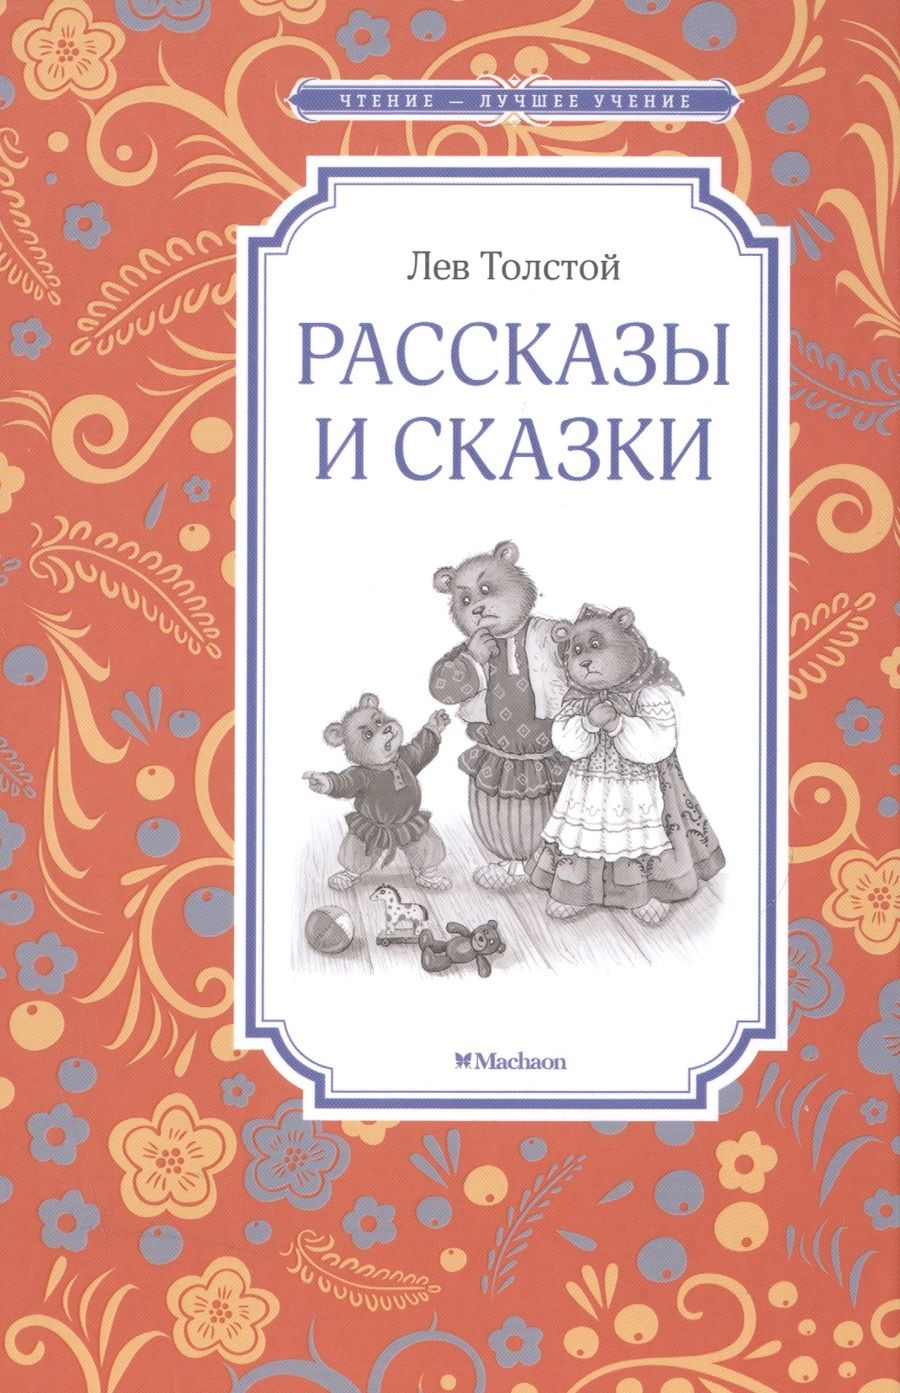 Обложка книги "Лев Толстой: Рассказы и сказки"